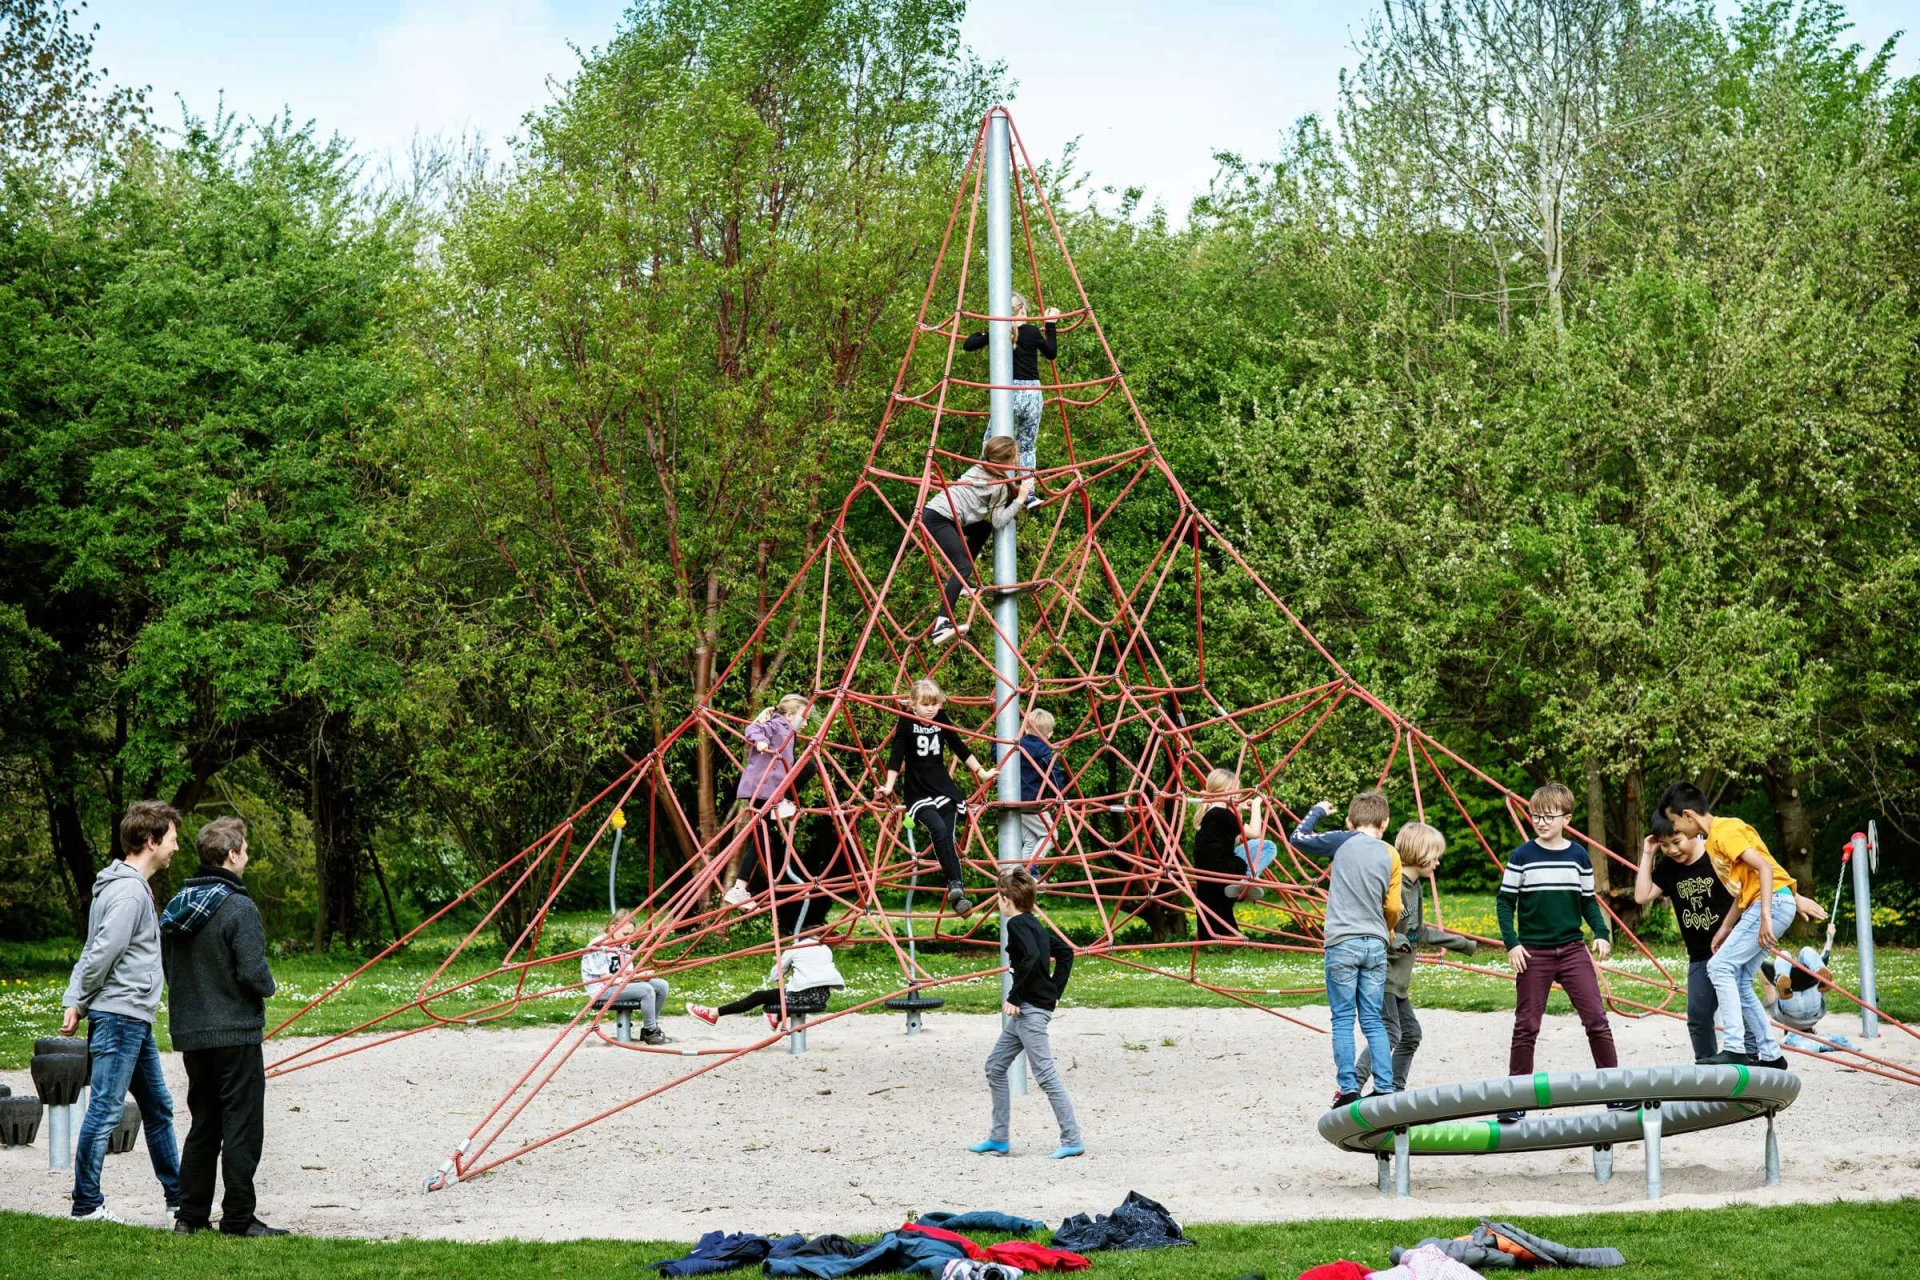 un gruppo di persone che gioca su una struttura di arrampicata a forma di piramide in un parco giochi